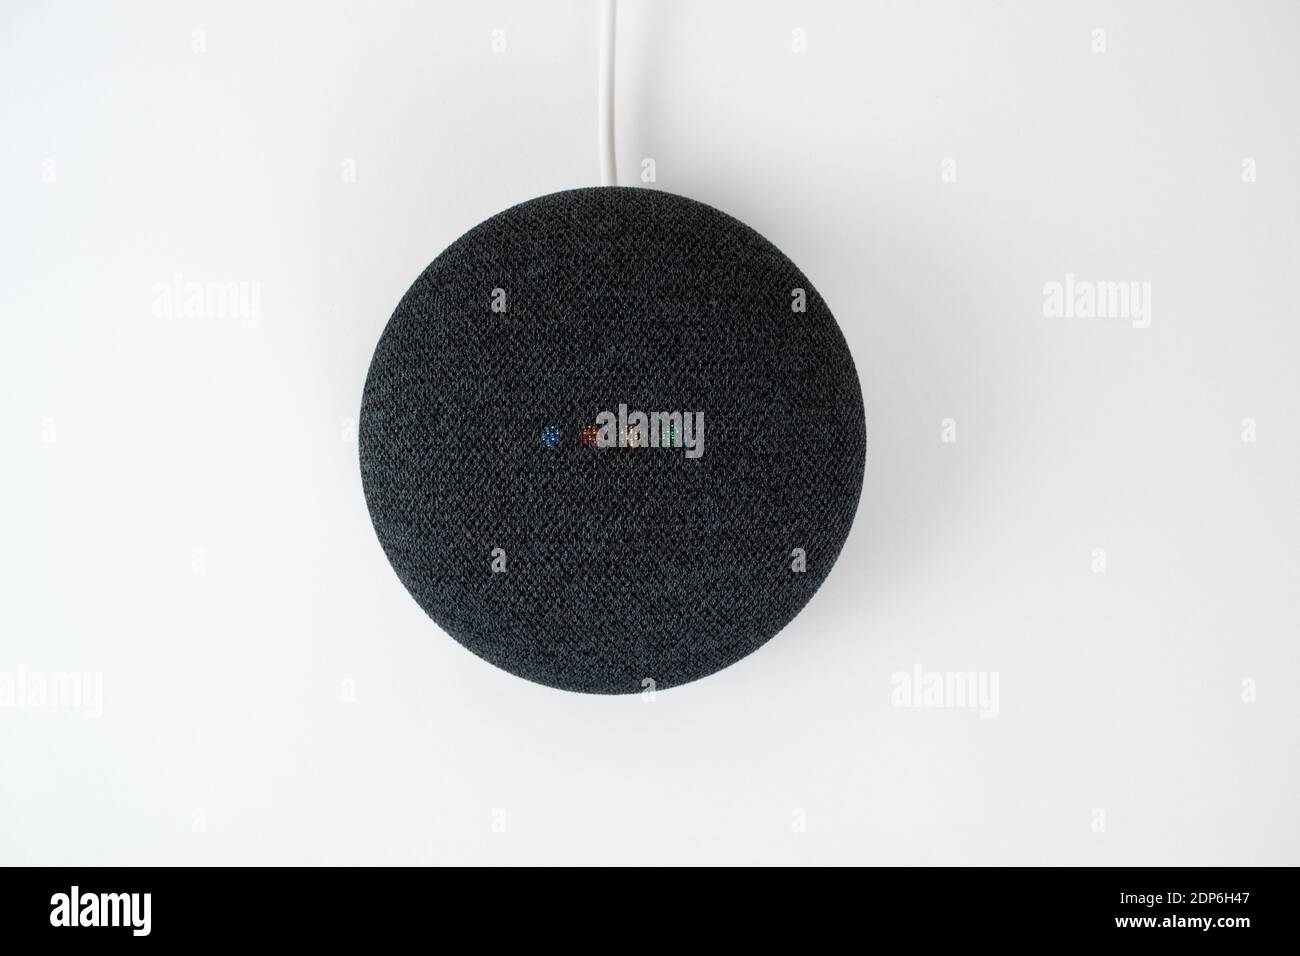 Londra, Regno Unito - 19 dicembre 2020: Antracite Google Nest Home Mini altoparlante intelligente con integrato Google Assistant su sfondo bianco. Foto Stock